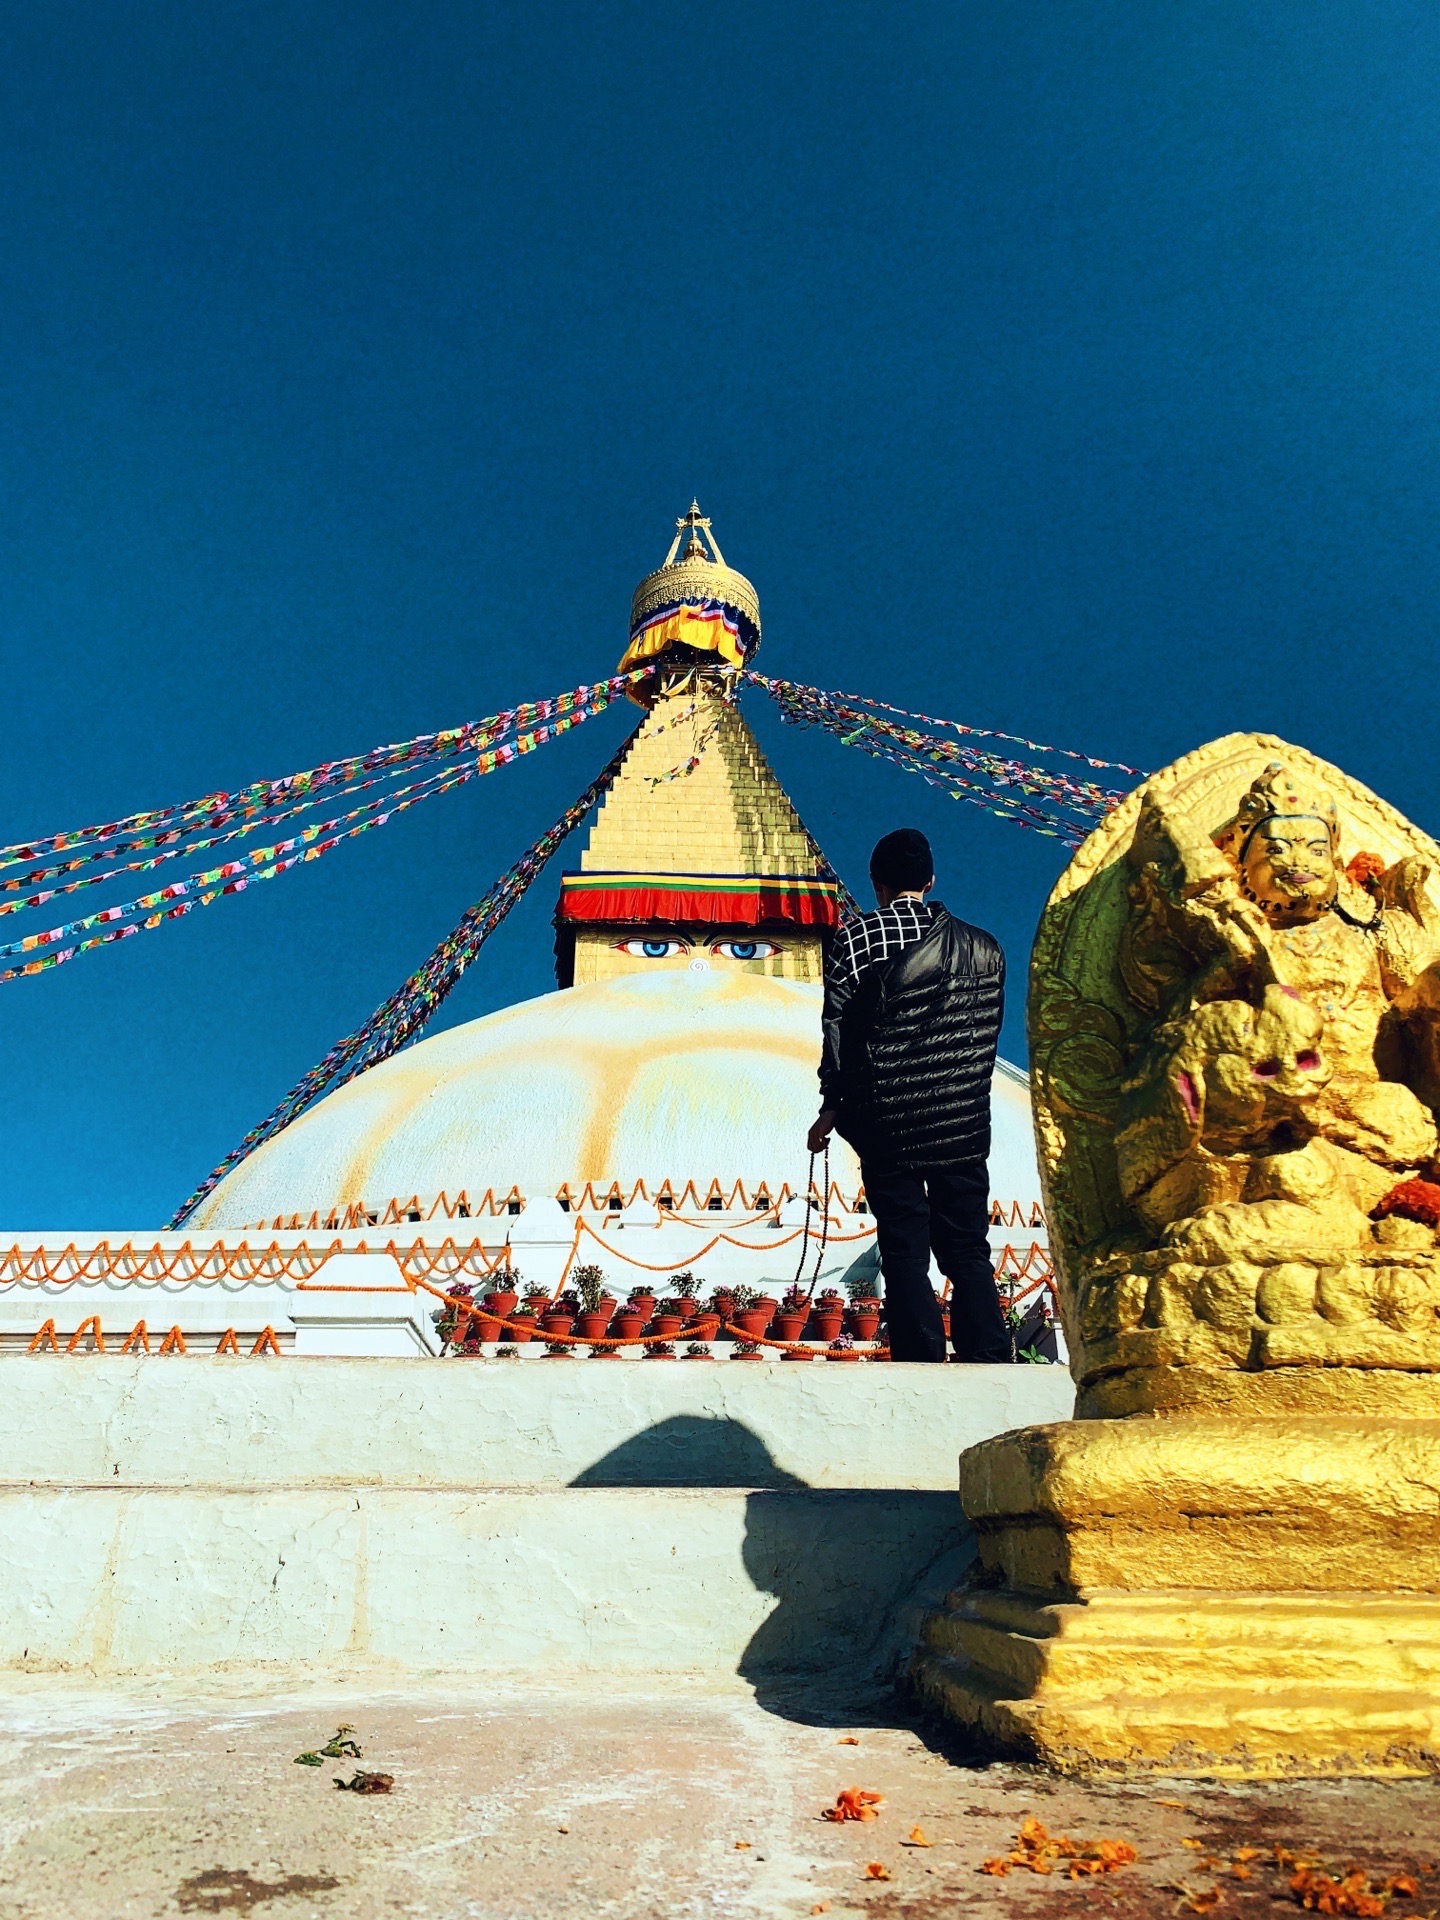 世界上最大的佛塔 容许一身安静的容身之处…  熙熙攘攘的游客不放过每一处值得拍的地方  连叩拜的僧徒